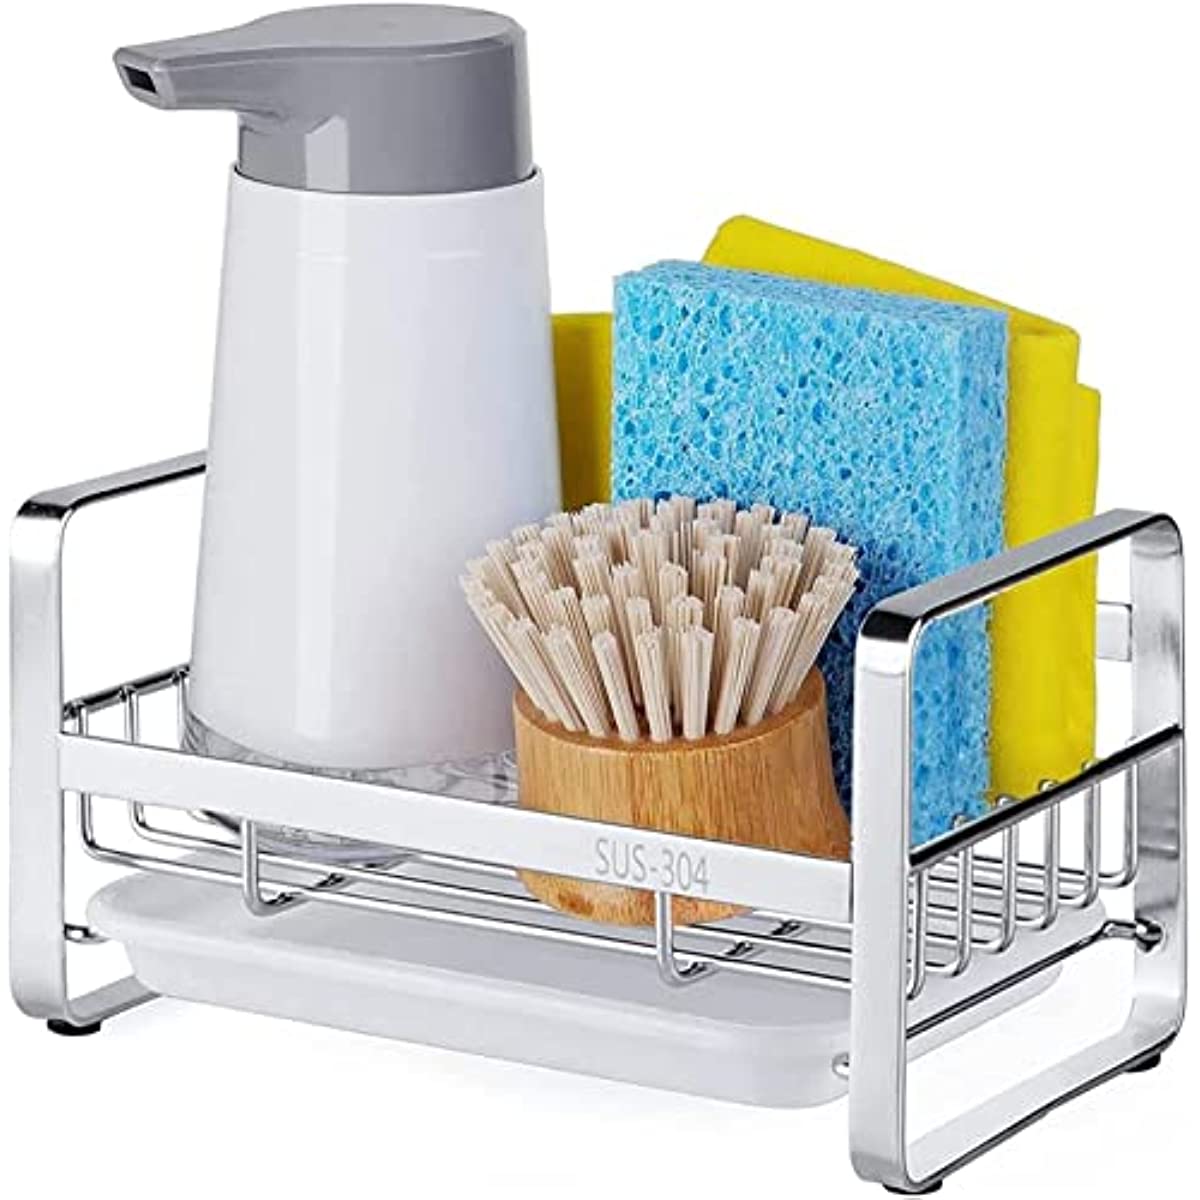 Kitchen Sink Caddy - Kitchen Sink Organizer - Quick Draining - Elegant Soap  Holder, Sponge Holder, Dish Brush Holder for Sink Organization